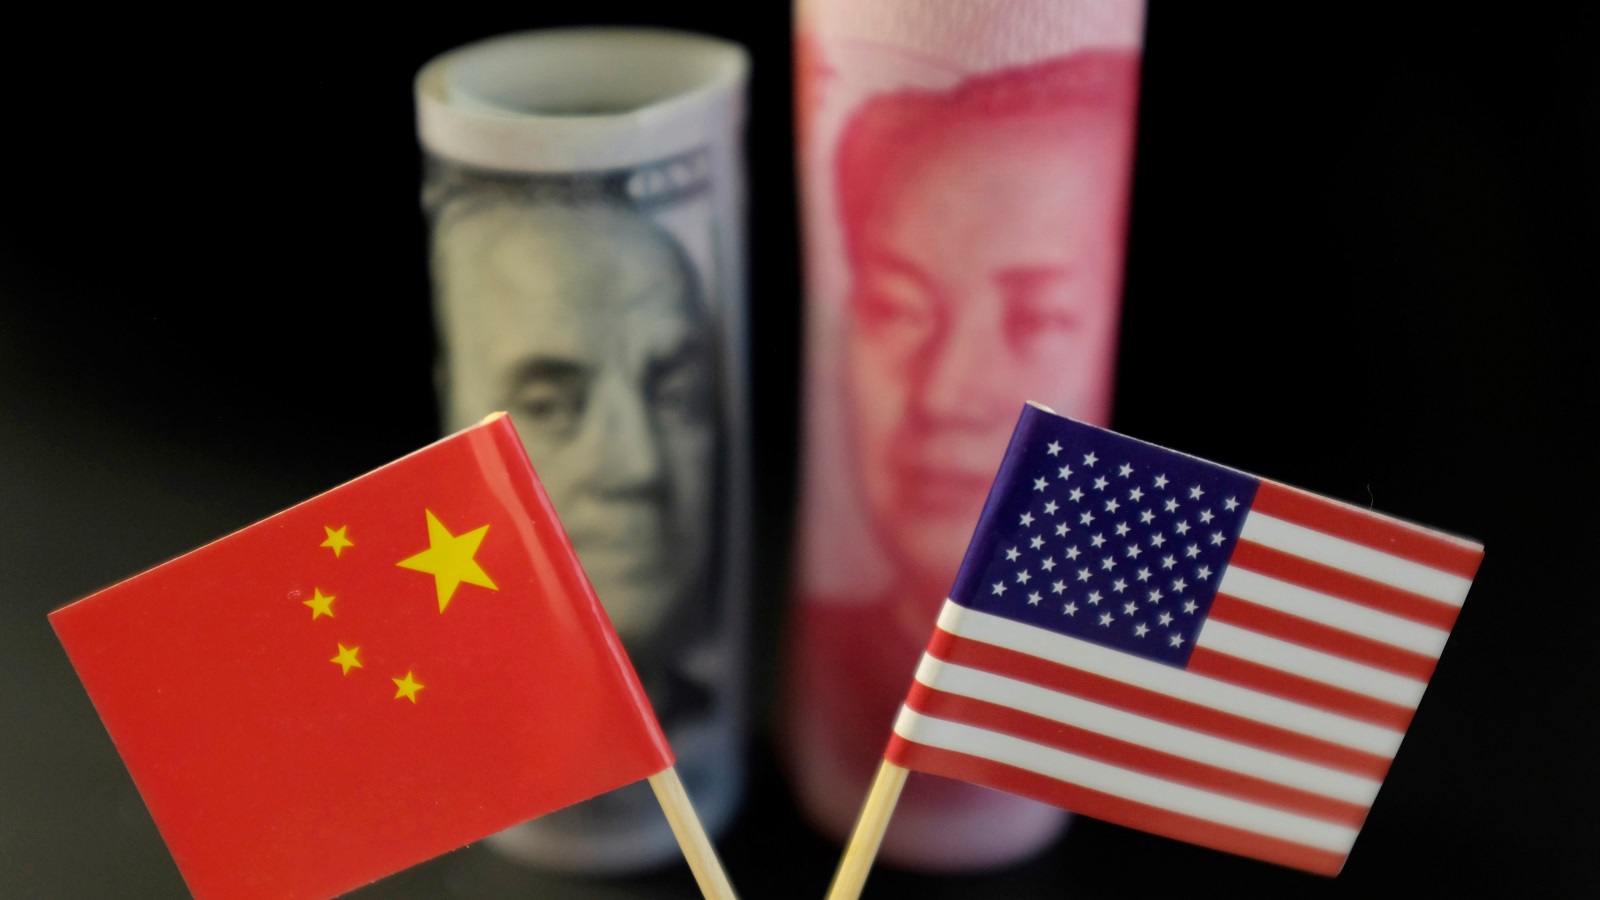  الصين أعلنت فرض رسوم جمركية انتقامية على منتجات أميركية (رويترز)